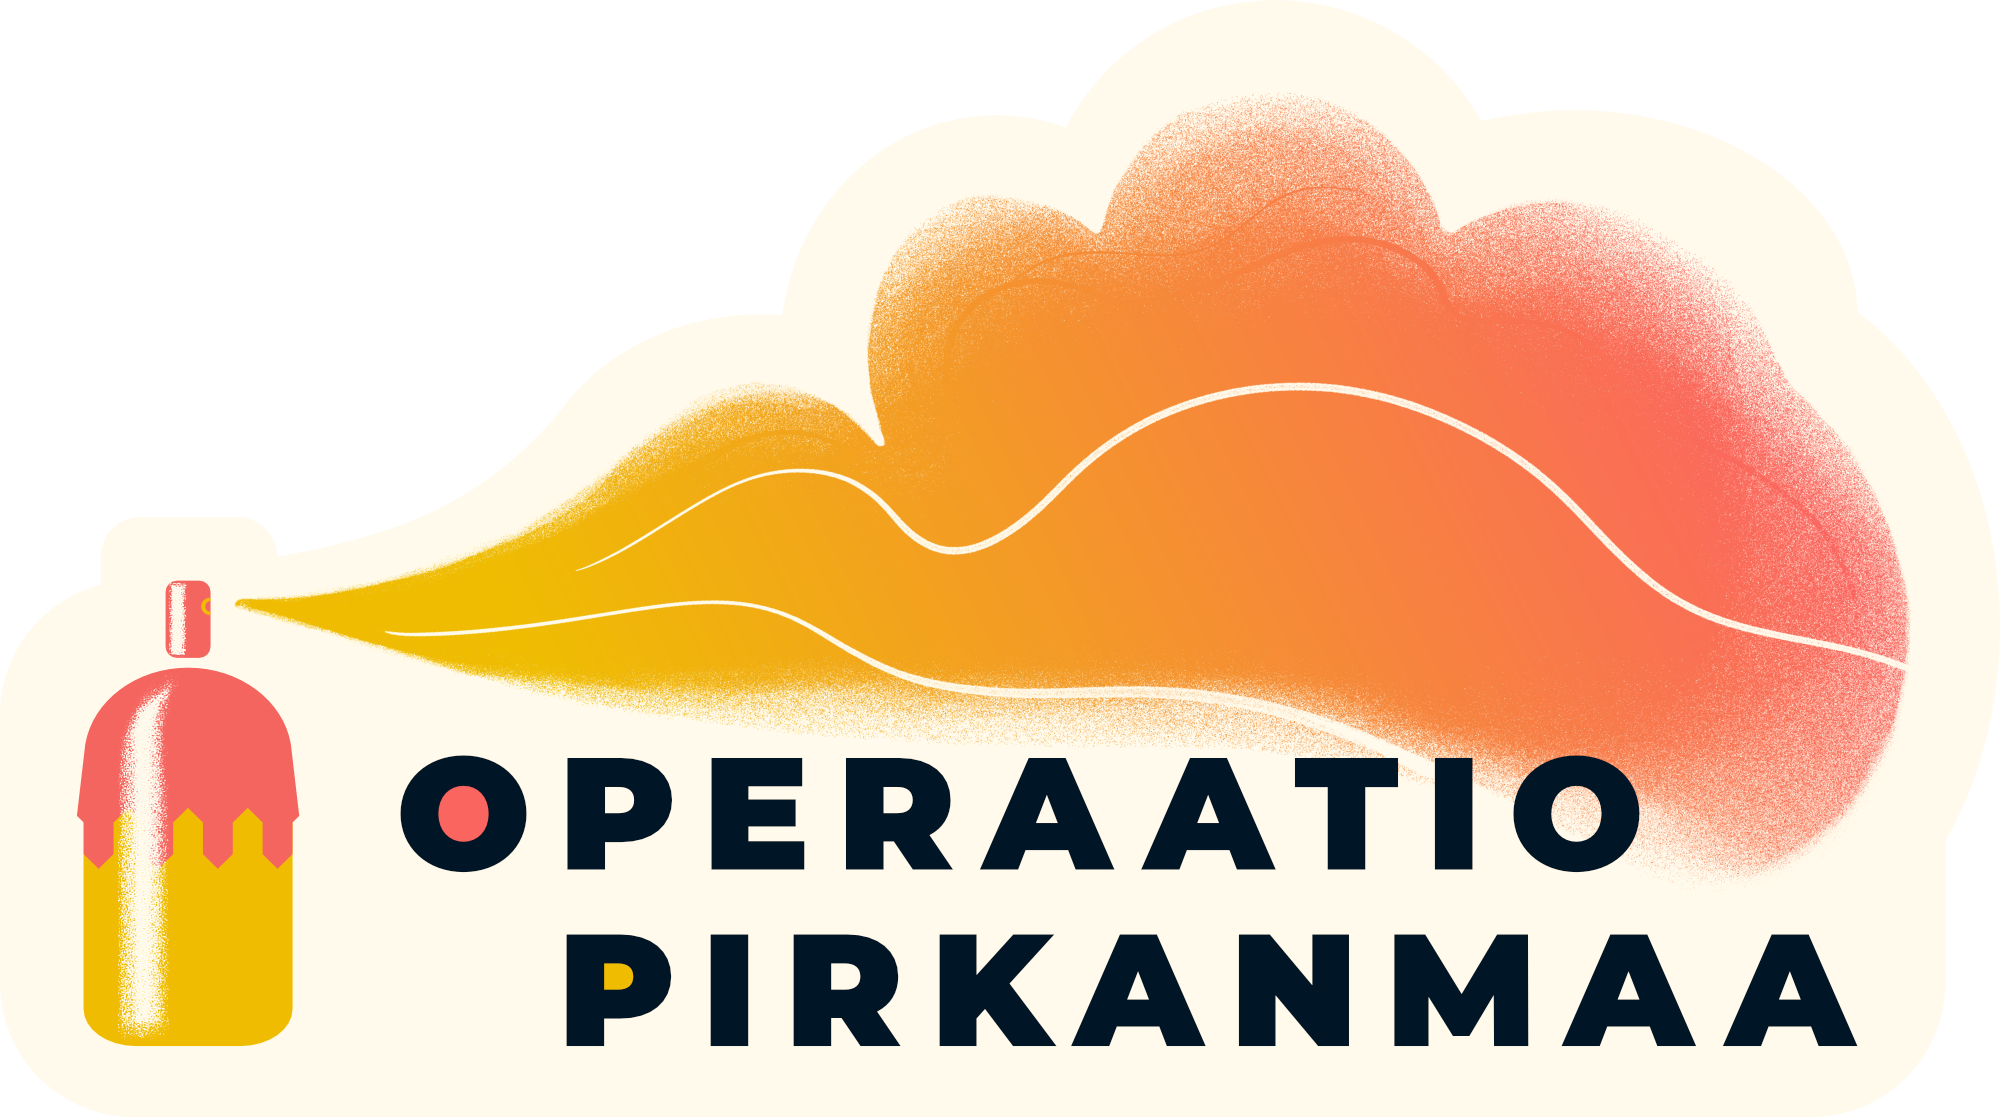 Operaatio Pirkanmaan ensimmäinen ohjelmistojulkaisu juhlistaa yhteisöllisyyttä ja alueen kuntayhteistyötä